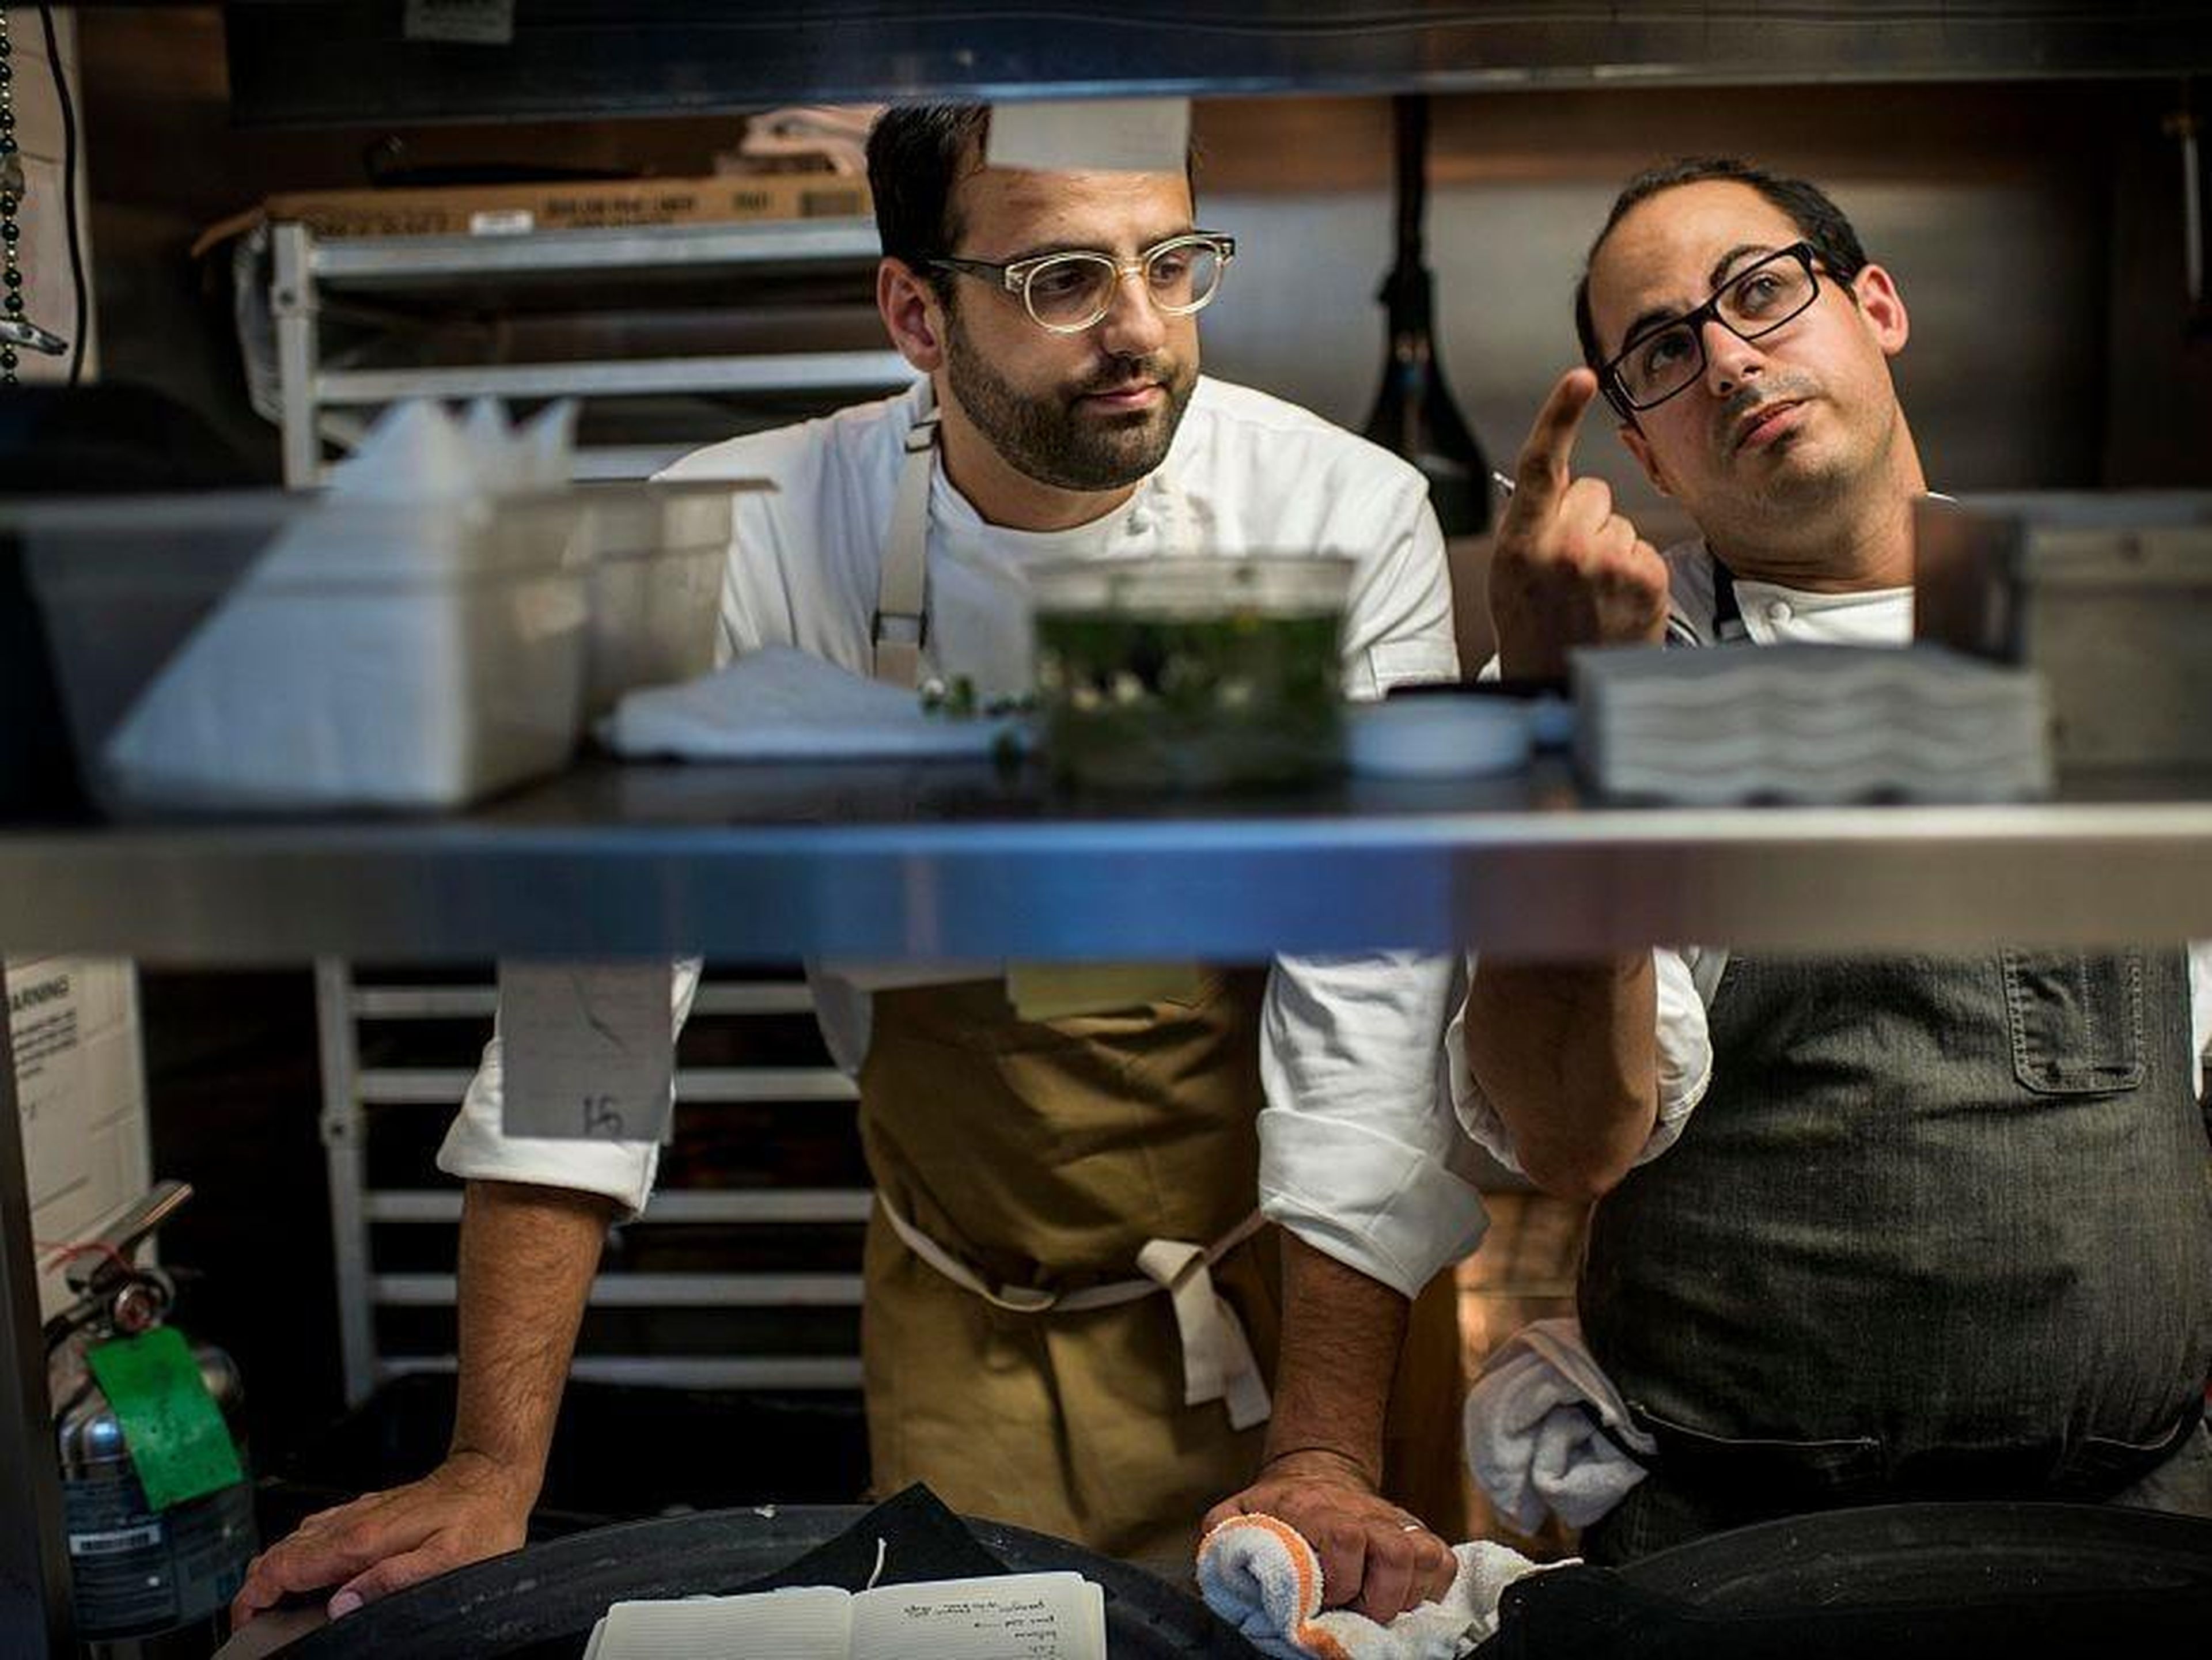 El galardonado chef James Beard, Alon Shaya, analiza un menú antes del servicio de cena en uno de sus restaurantes.